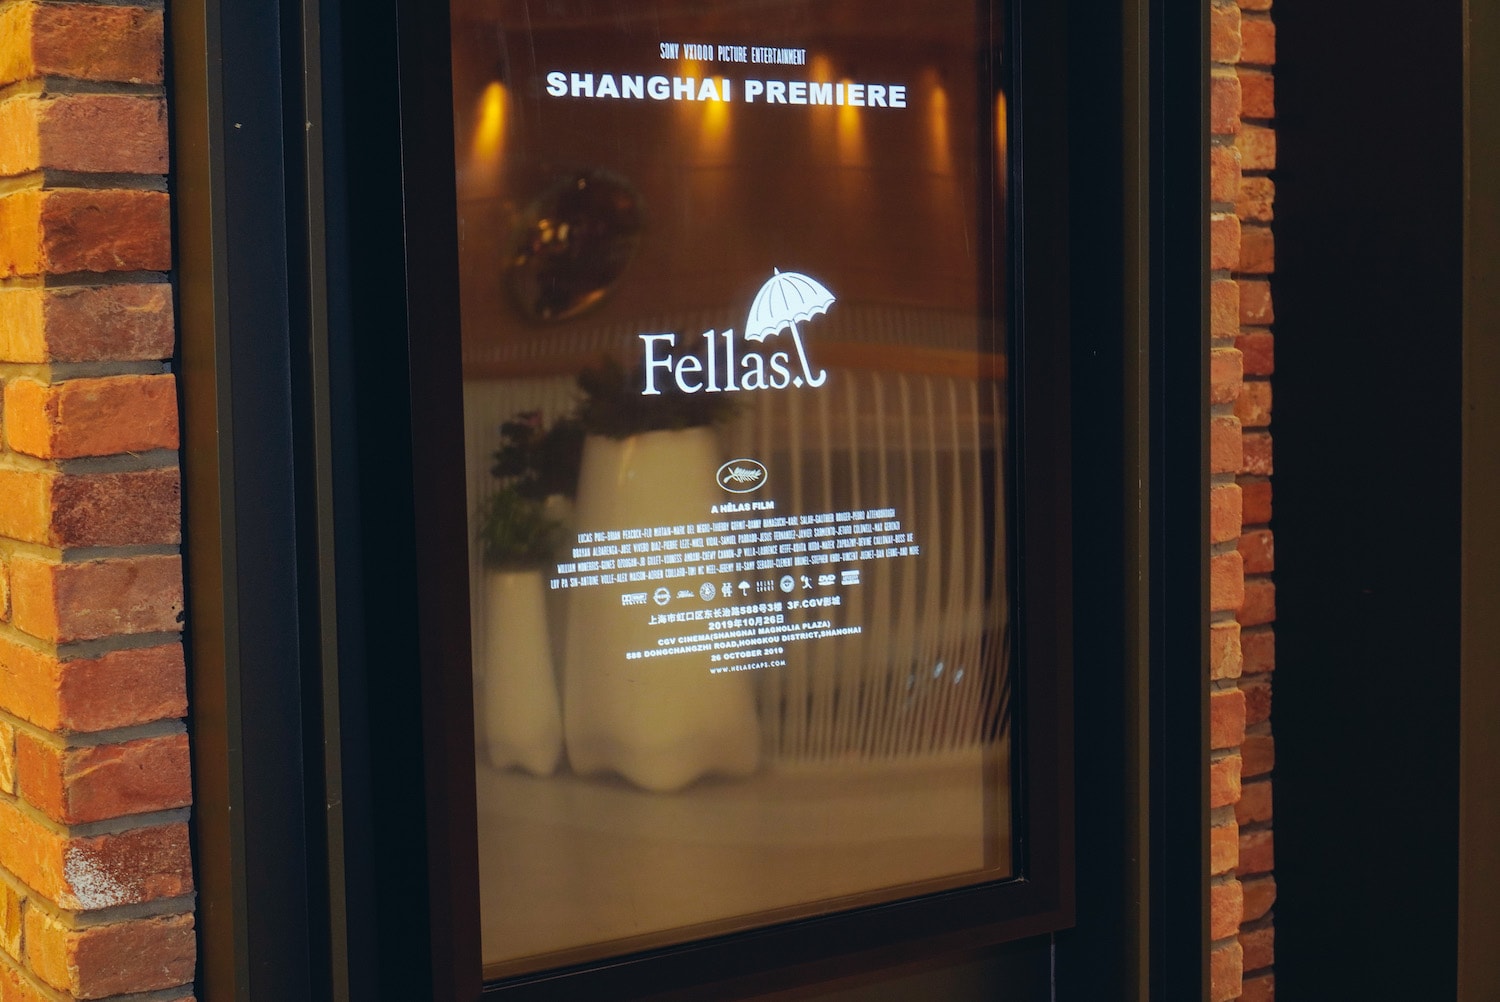 Hélas 全新滑板電影「Fellas」上海站放映活動回顧